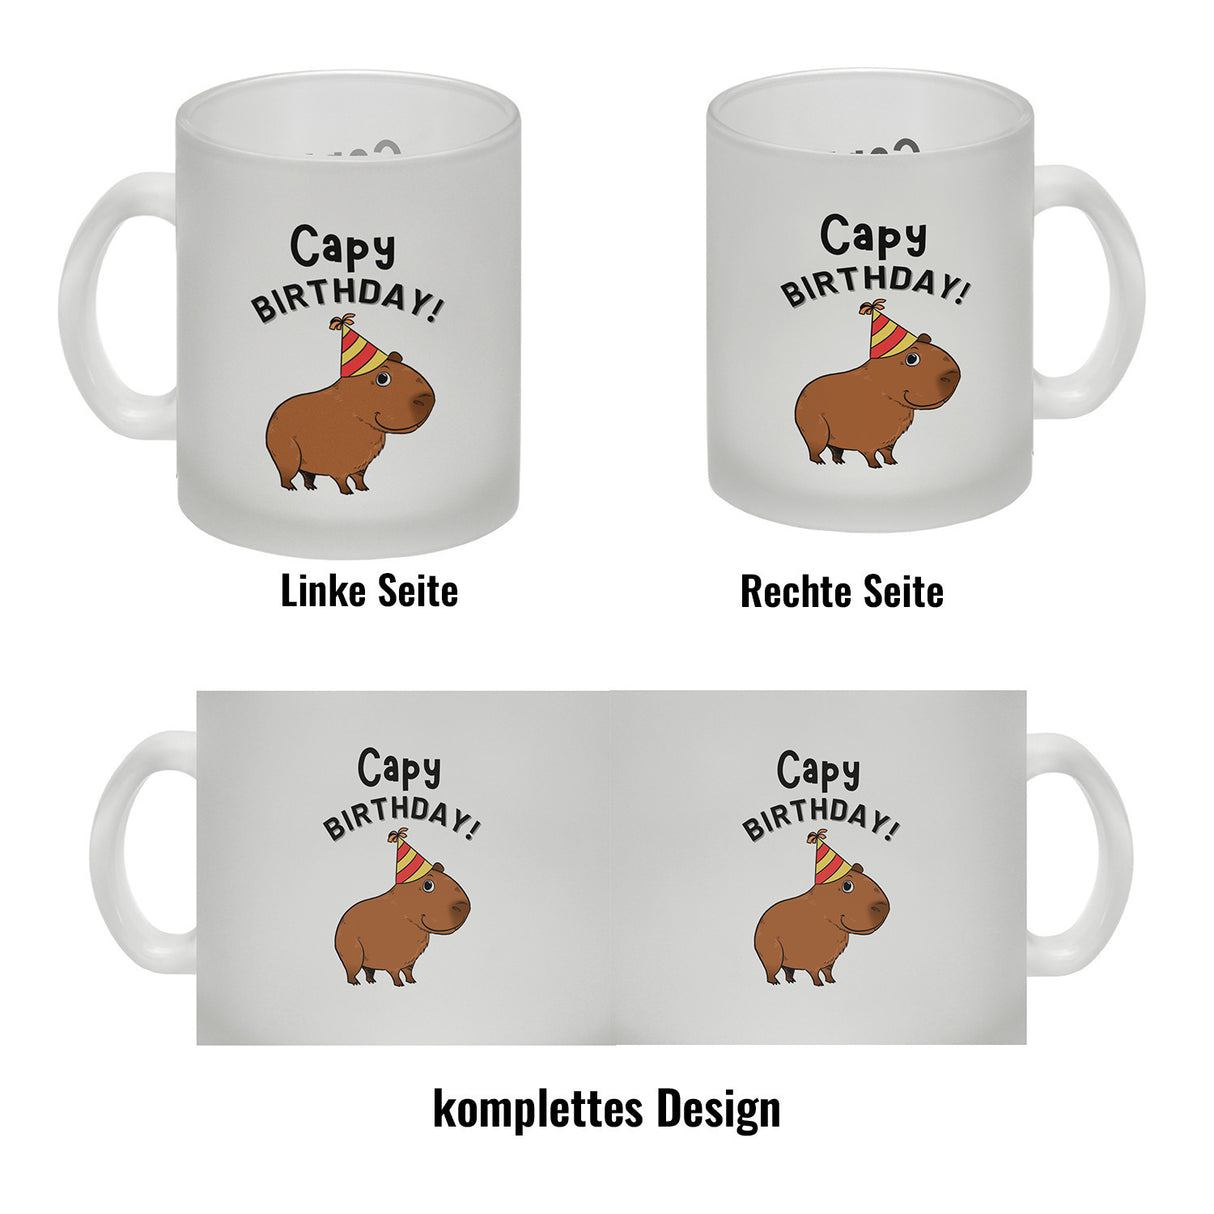 Capy Birthday Kaffeebecher mit niedlichem Capybara